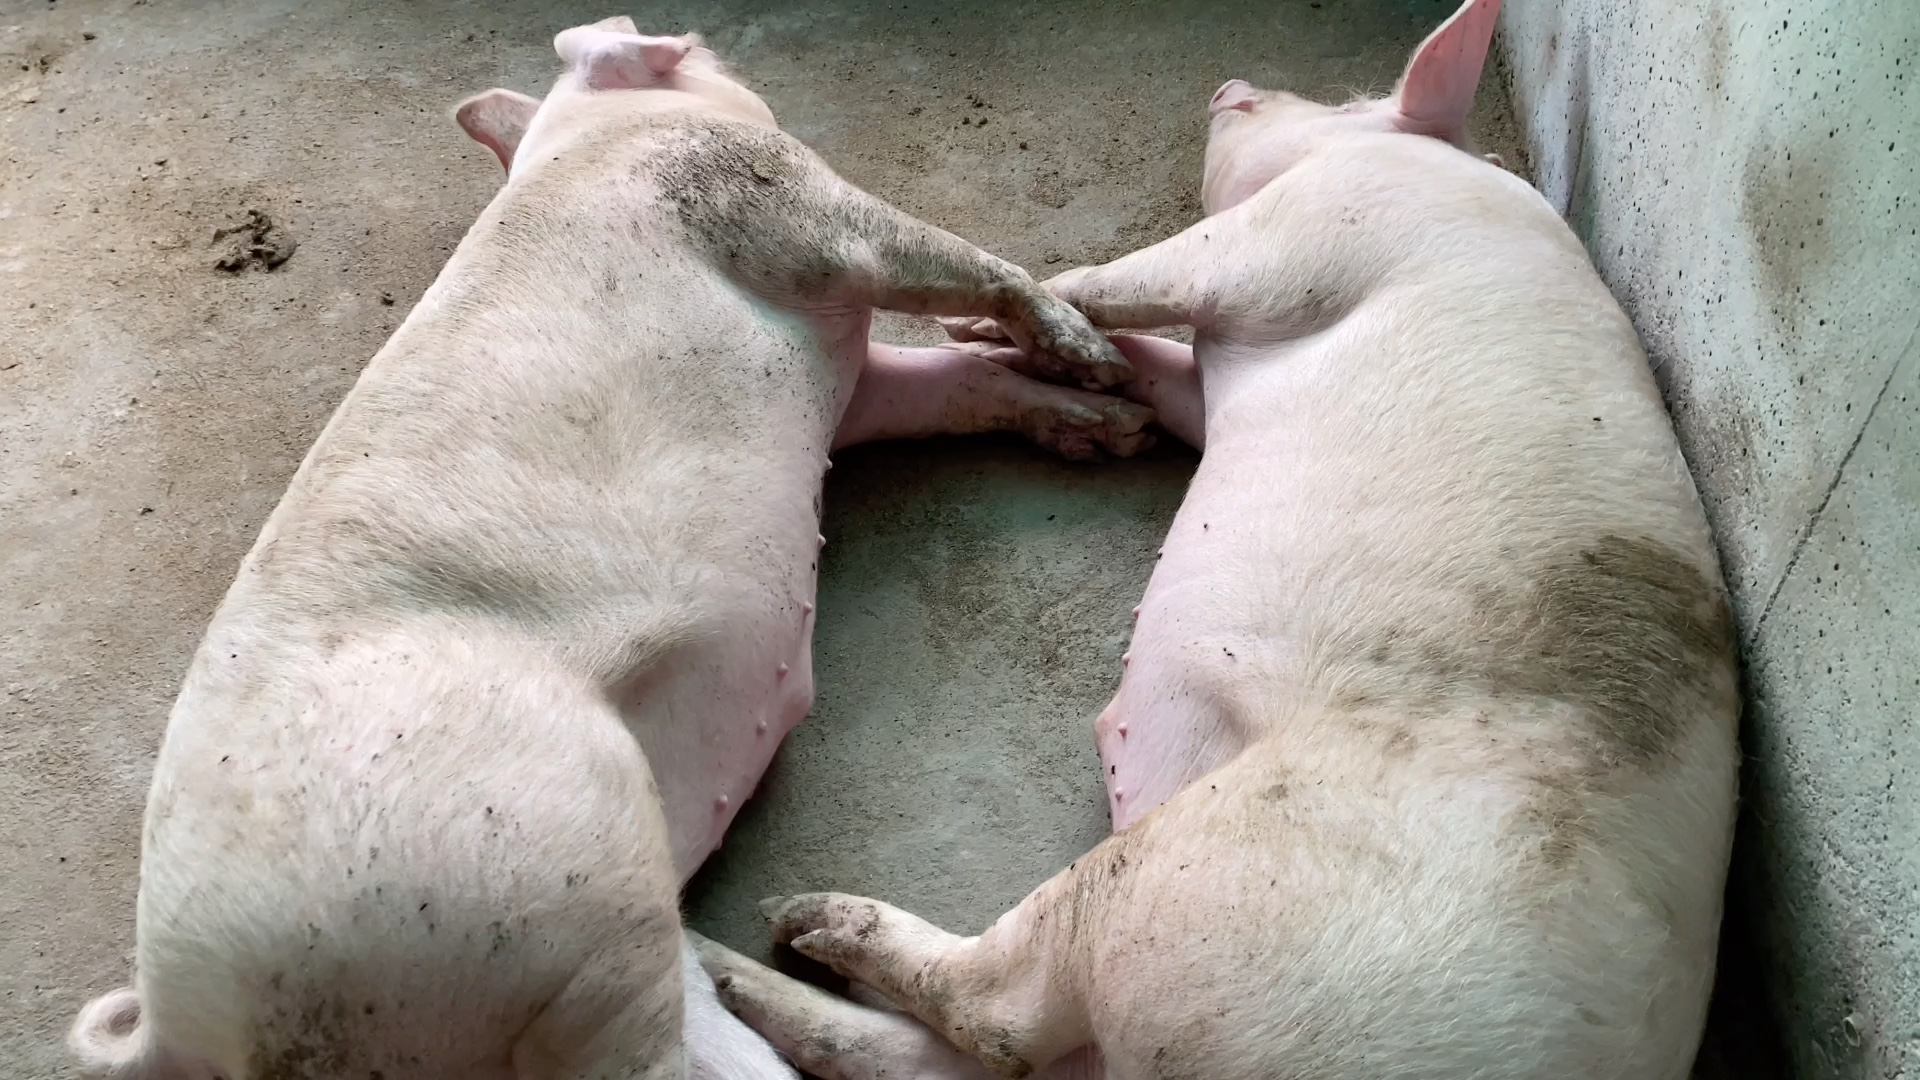 我的天呐,两头抱着睡觉的猪,我也不知道你们在说什么啊